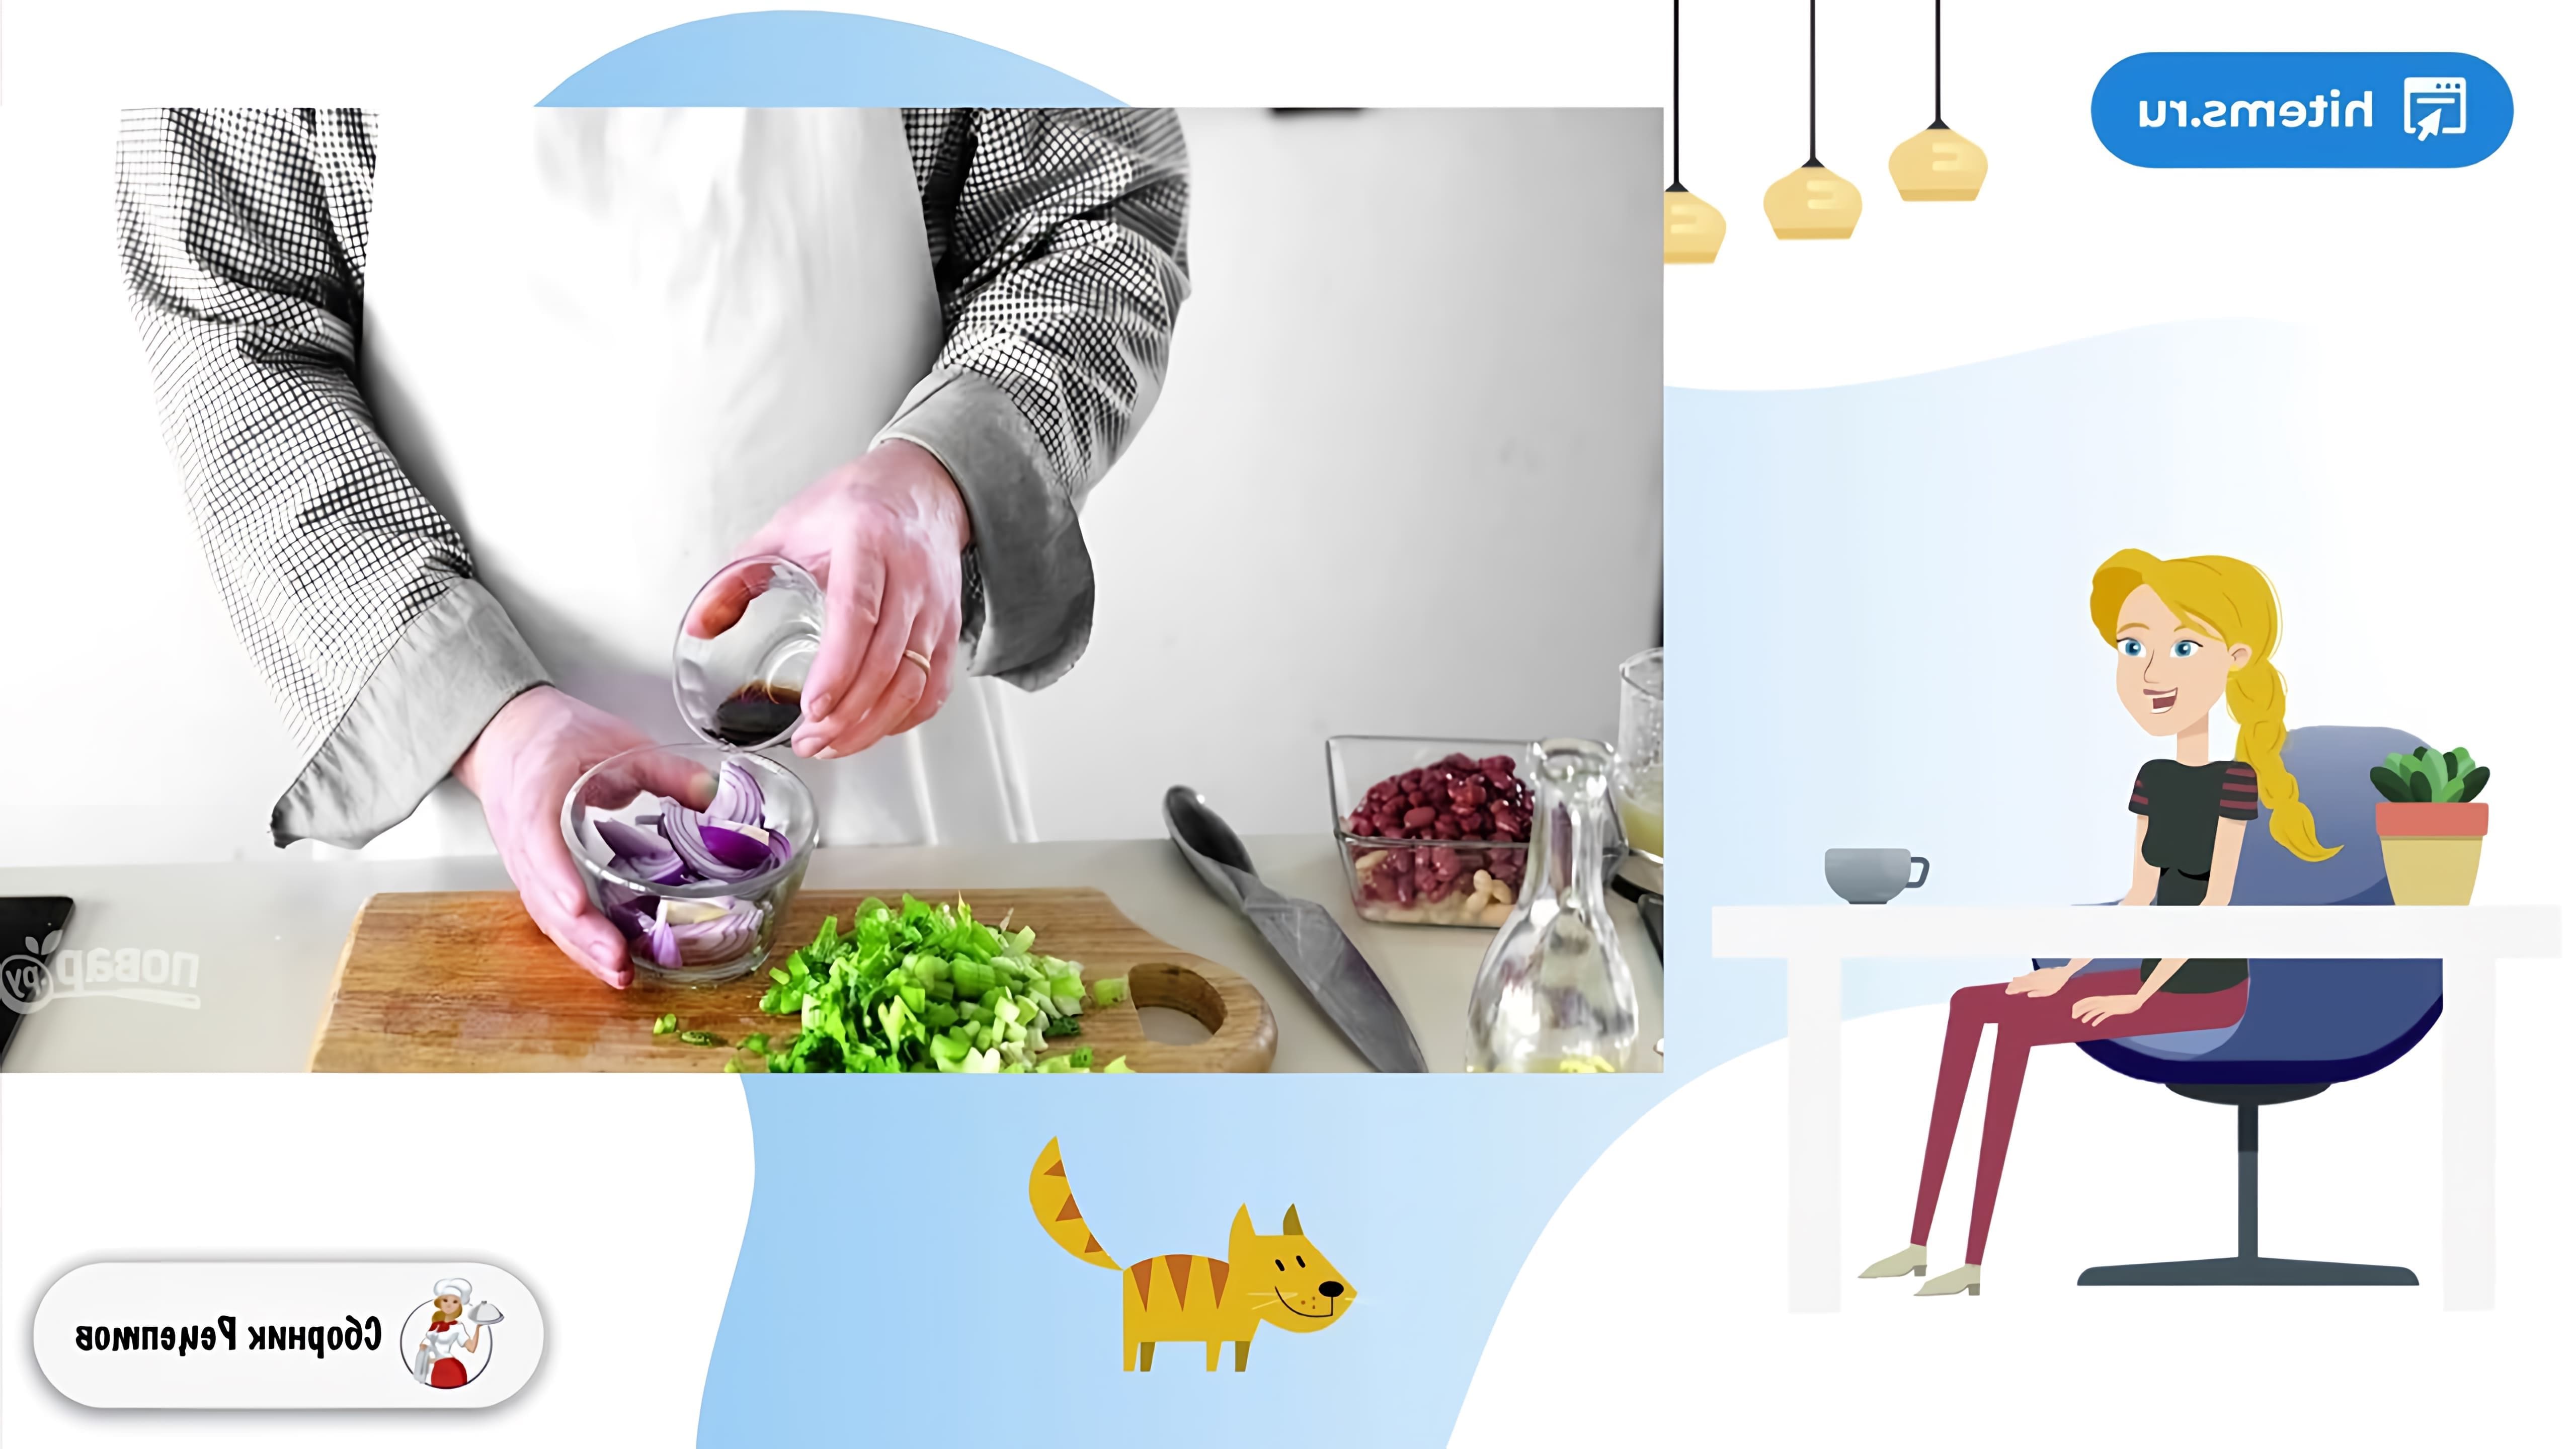 В этом видео демонстрируется рецепт салата с красной фасолью и кириешками, который можно приготовить в домашних условиях